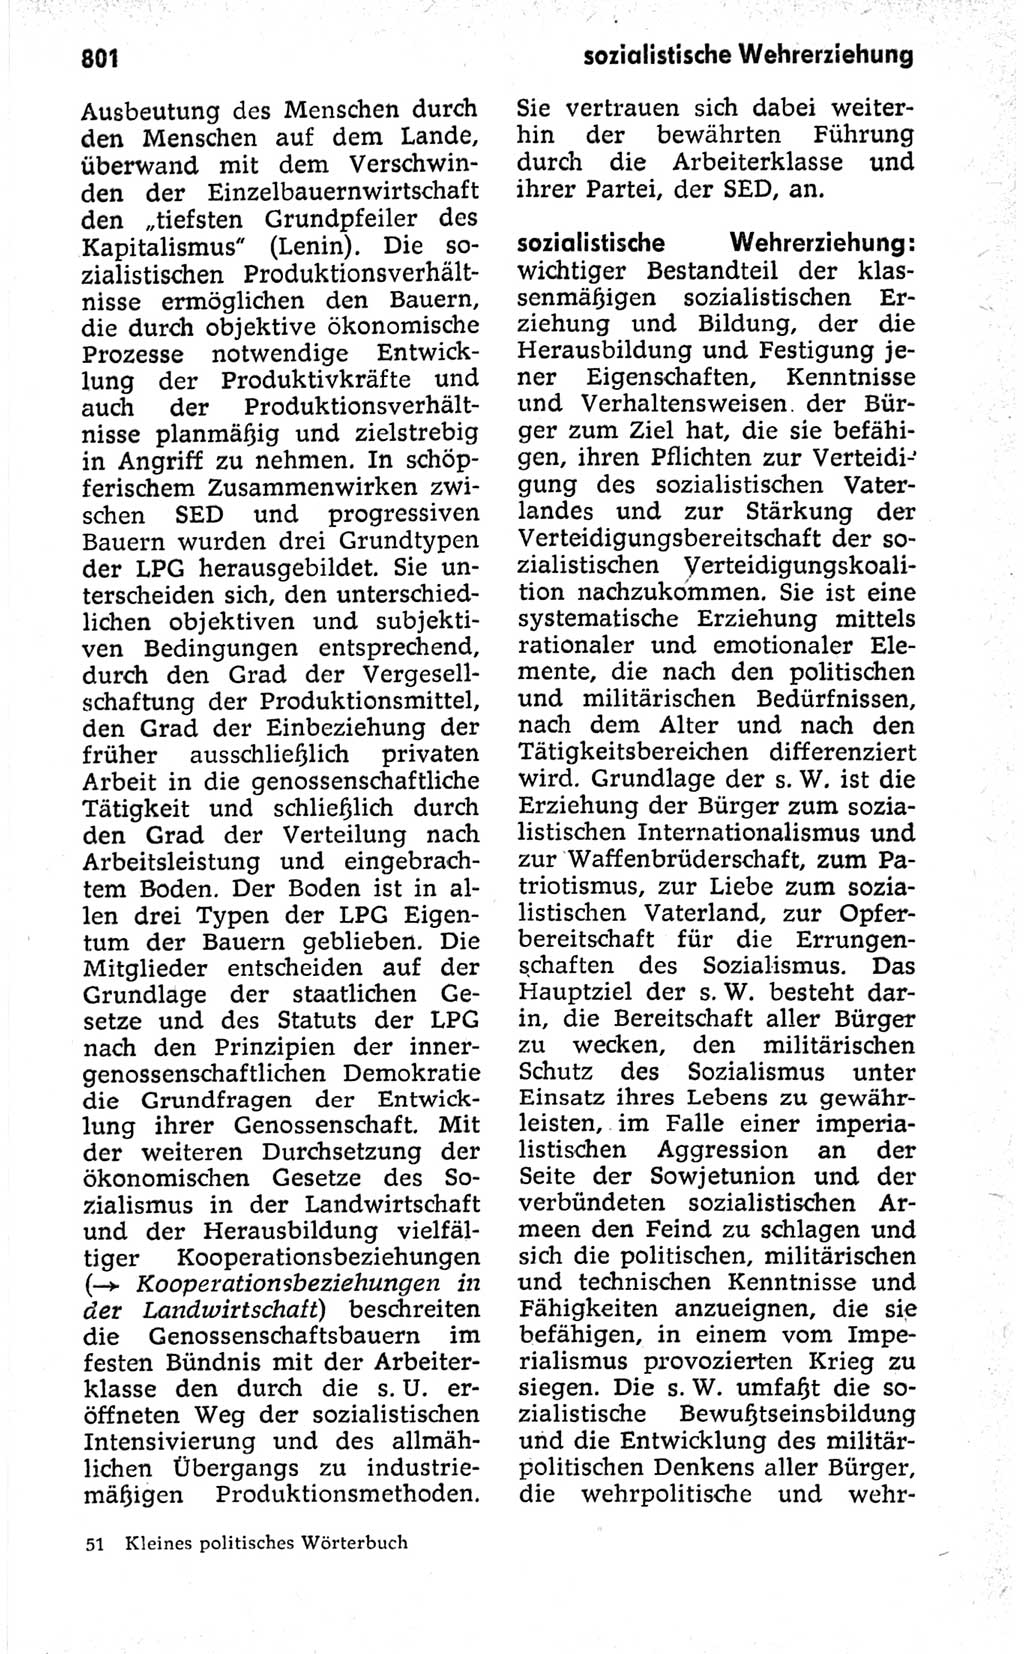 Kleines politisches Wörterbuch [Deutsche Demokratische Republik (DDR)] 1973, Seite 801 (Kl. pol. Wb. DDR 1973, S. 801)